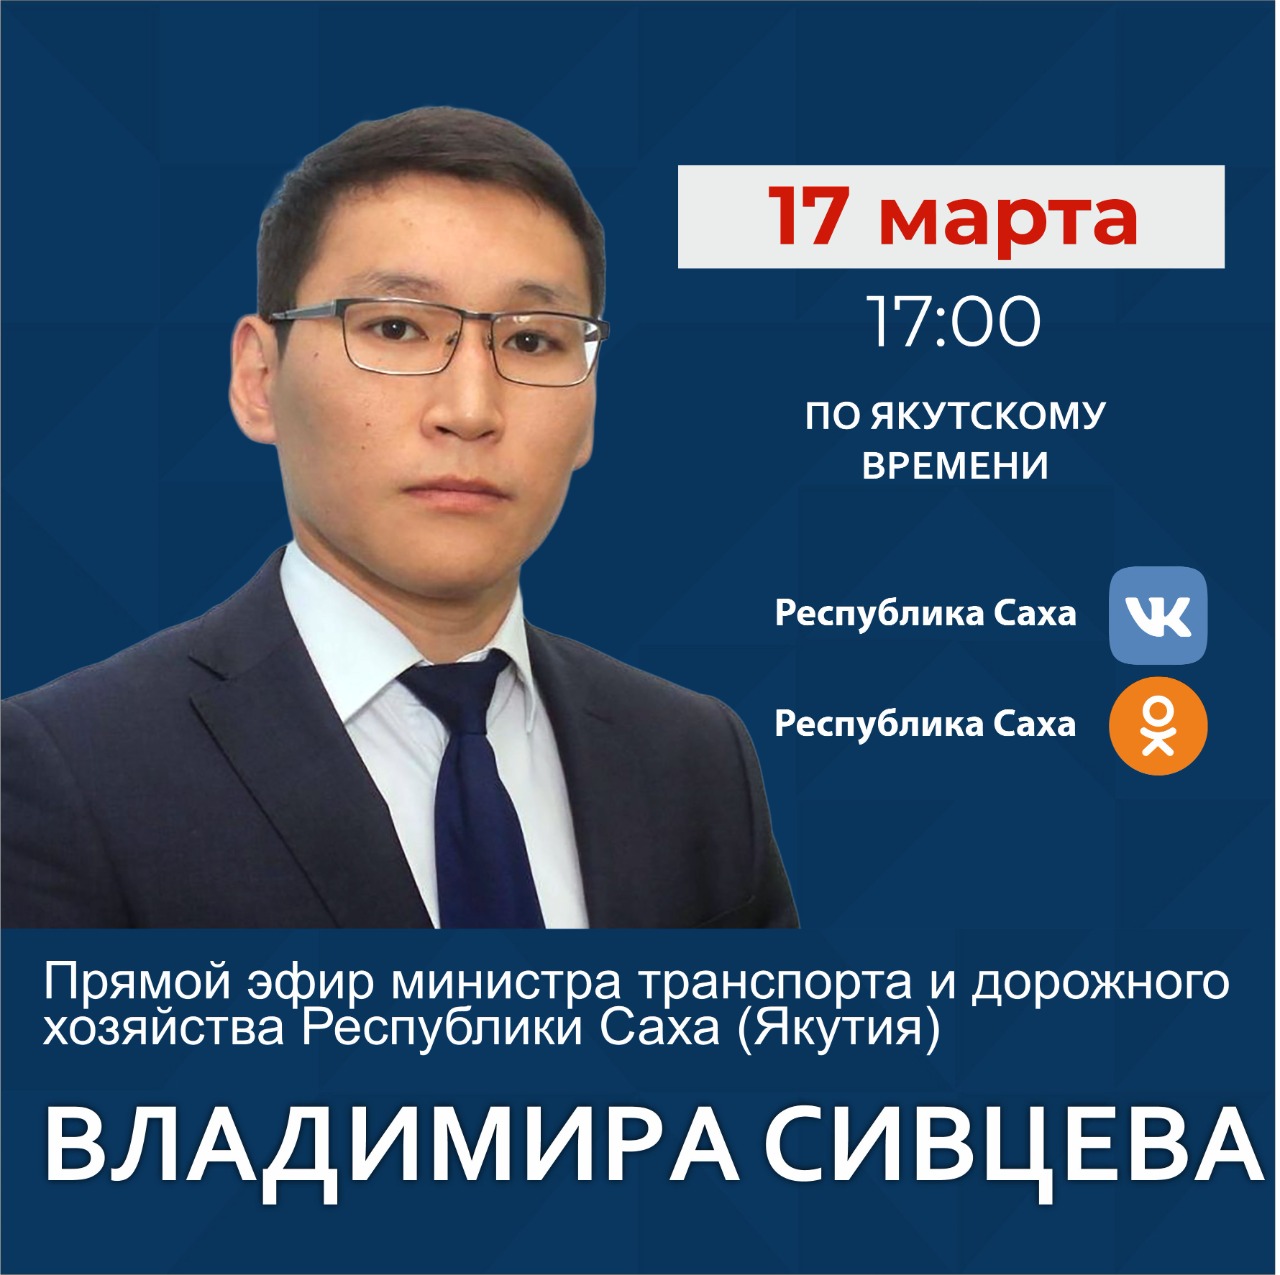 Министр транспорта и дорожного хозяйства Якутии Владимир Сивцев проведет эфир в соцсетях 17 марта